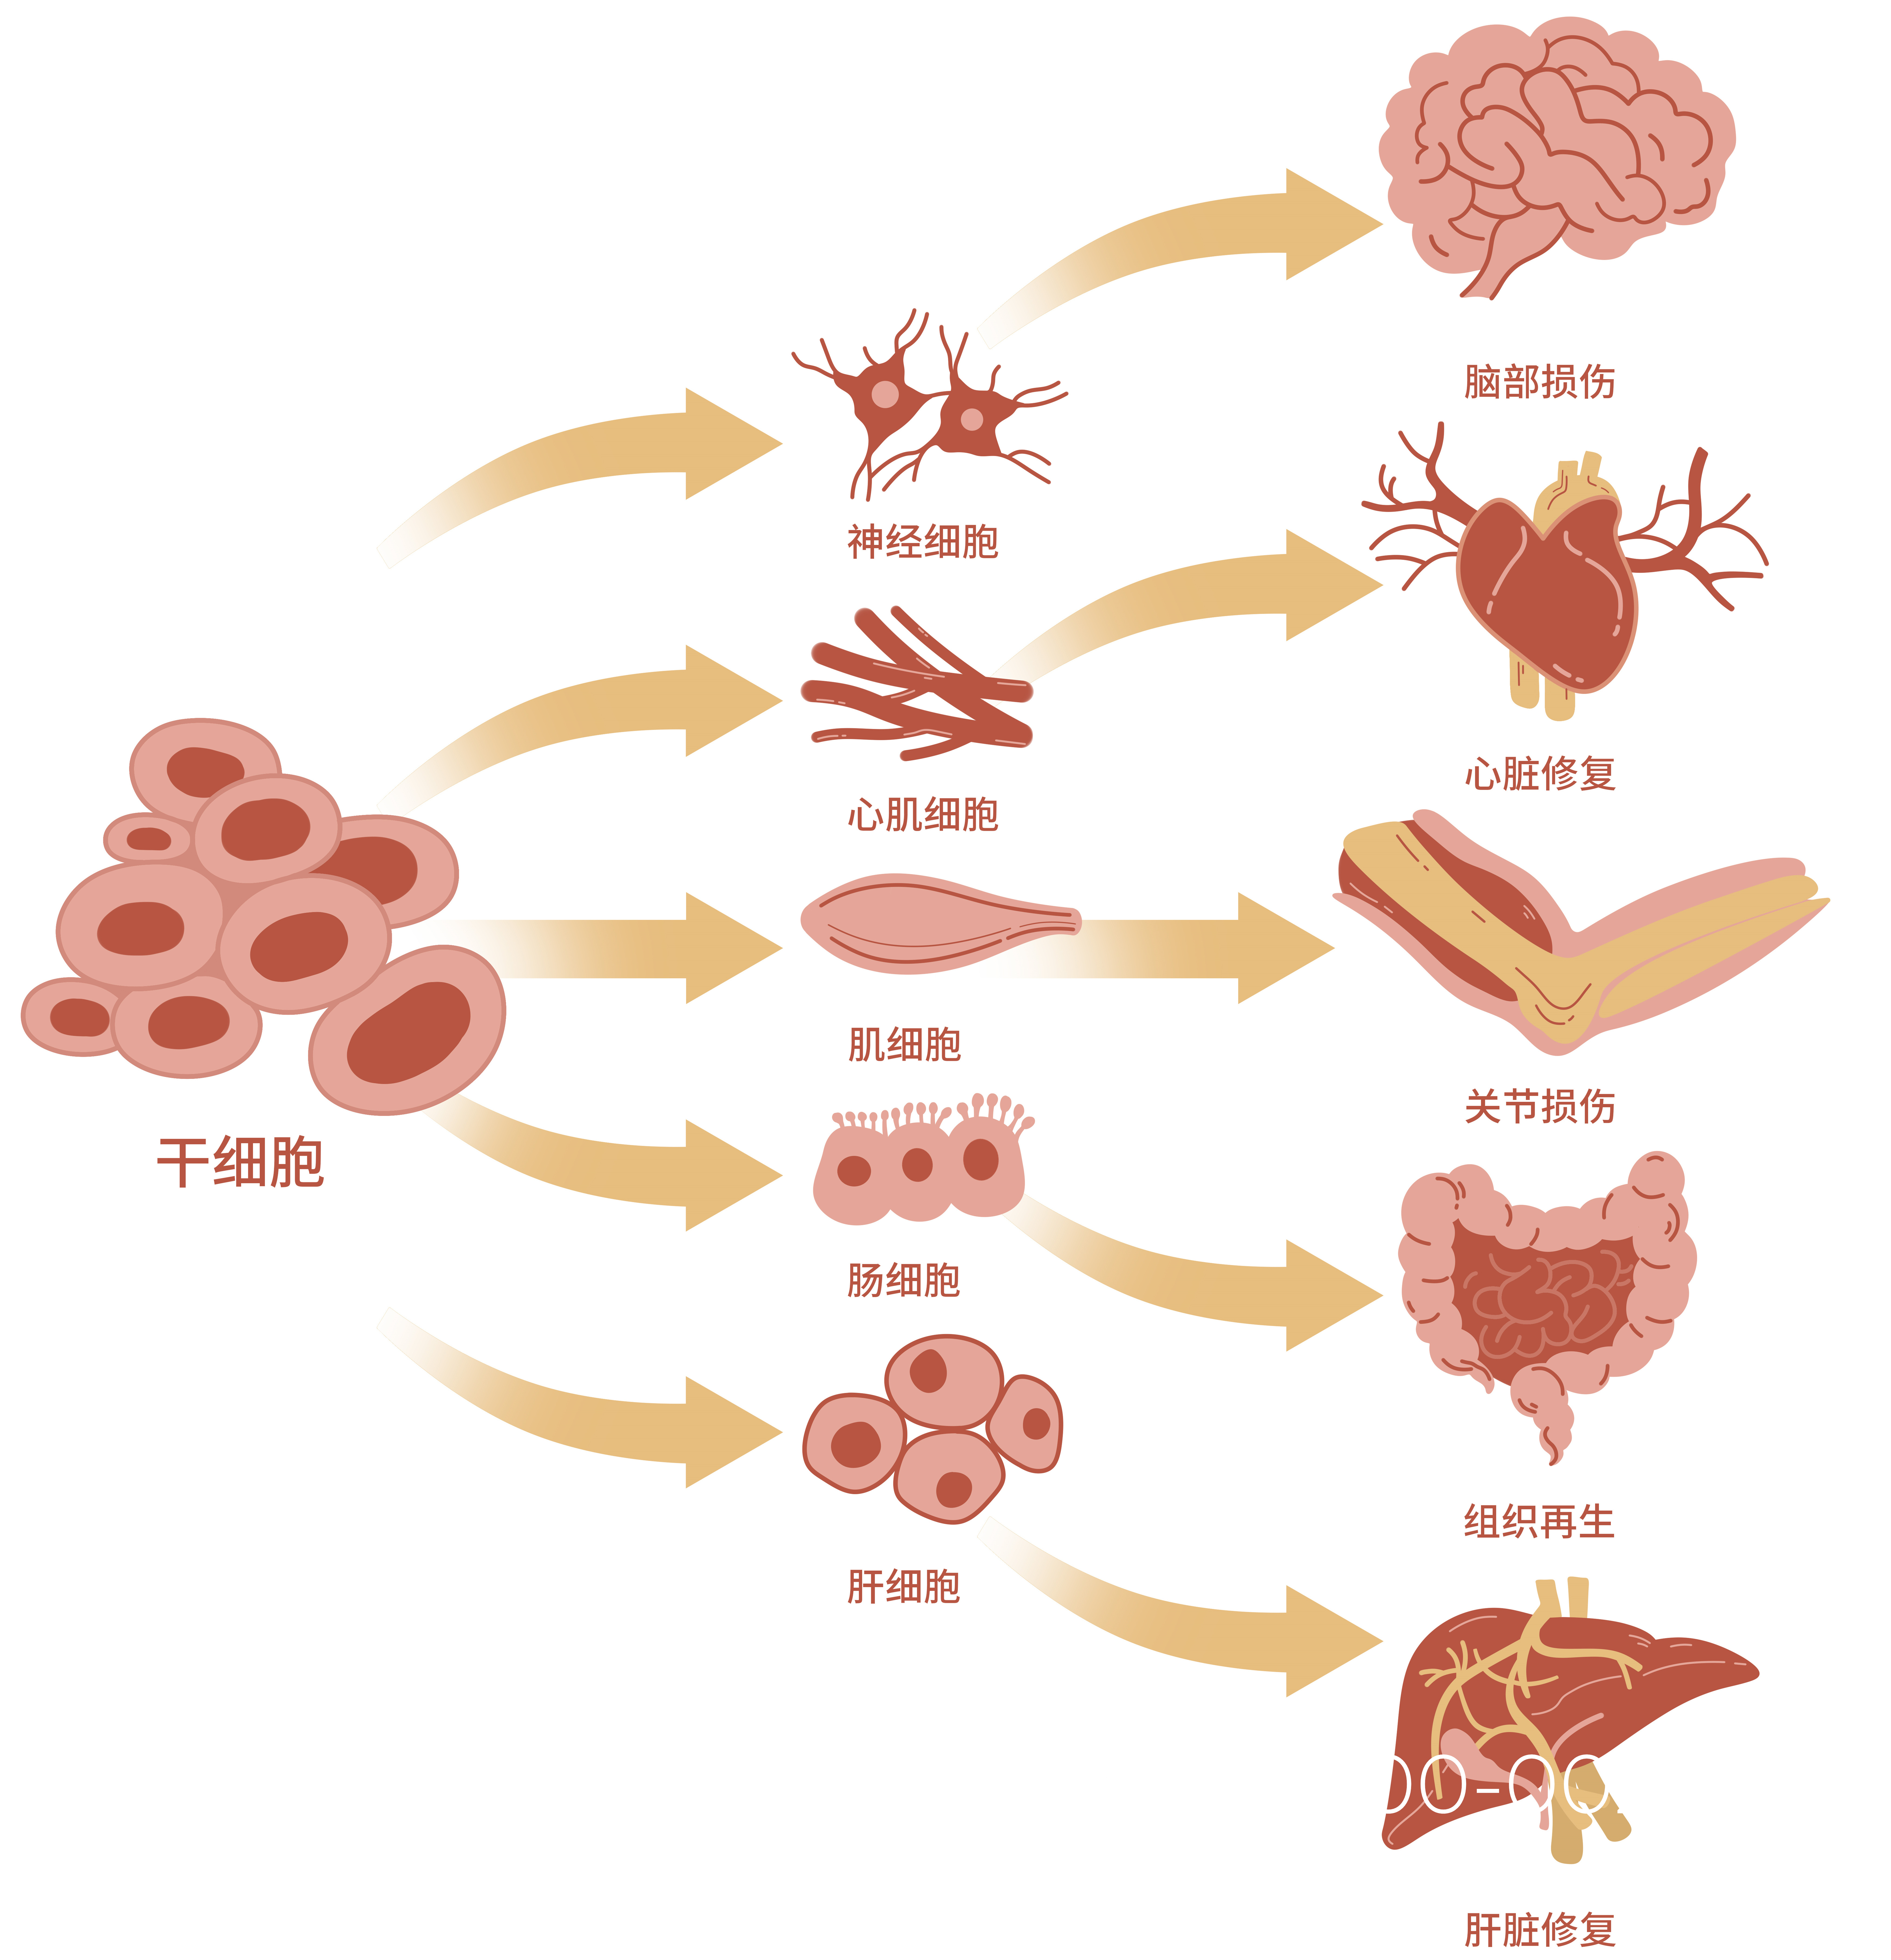 中国细胞免疫治疗排名。